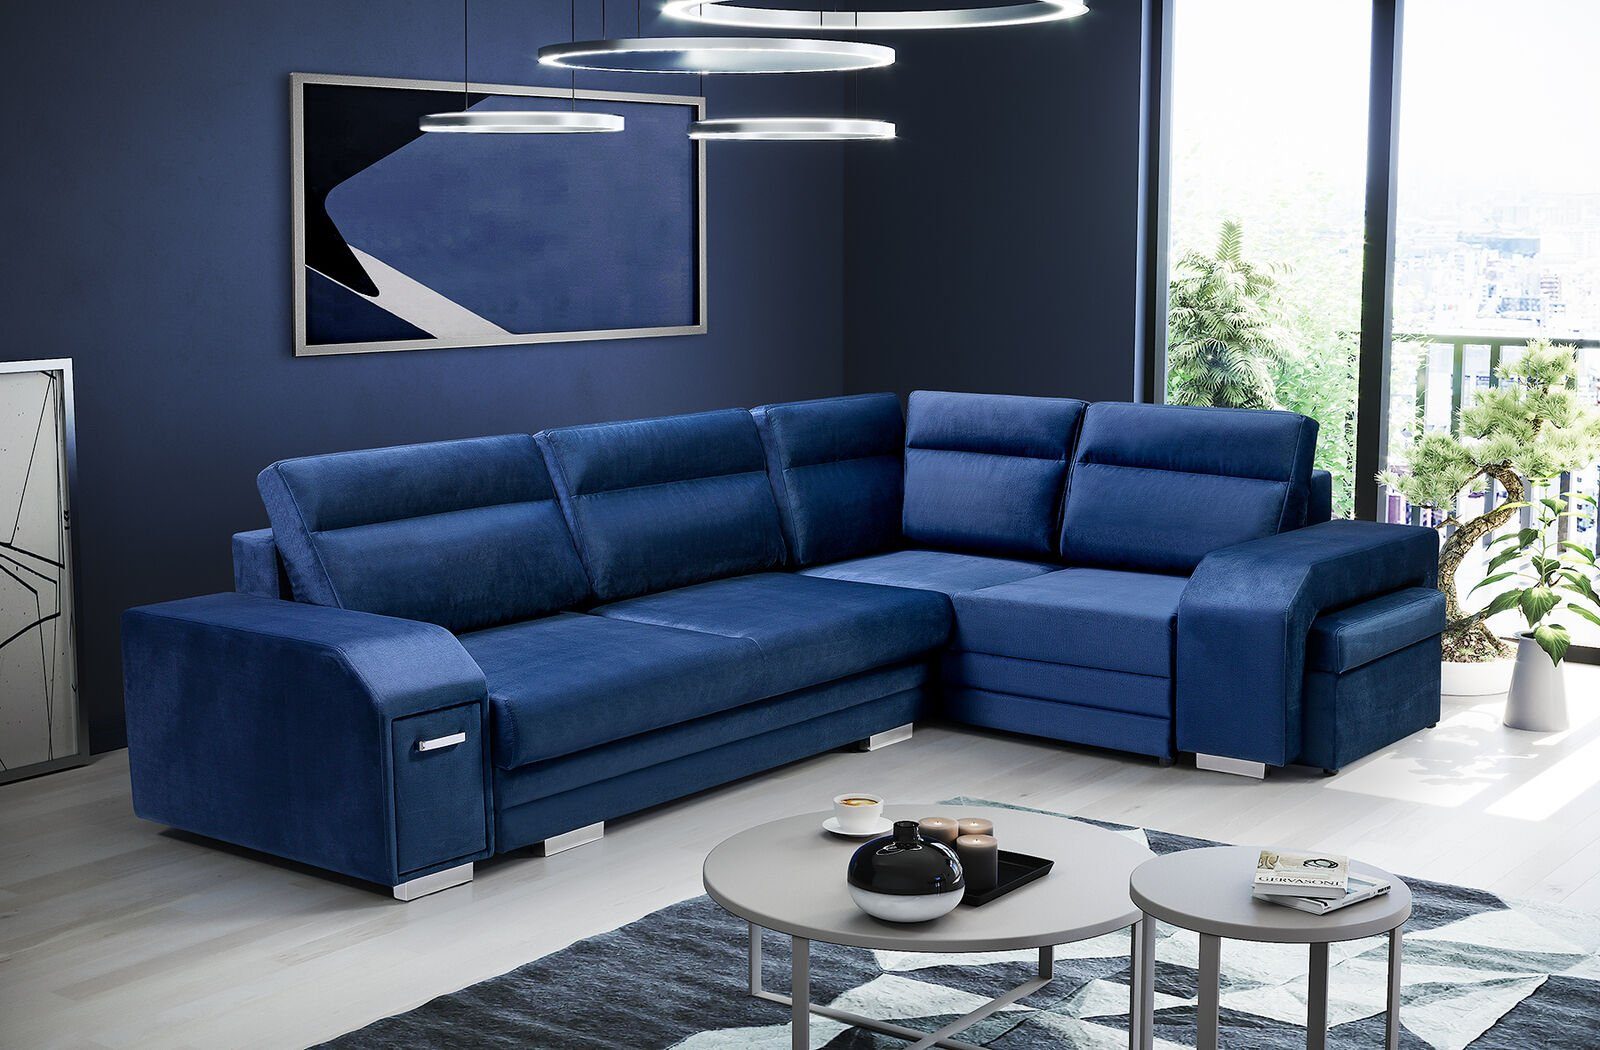 JVmoebel Ecksofa, Ecksofa Sofa Couch Polster Eck Wohnlandschaft Wohnzimmer Couch Blau